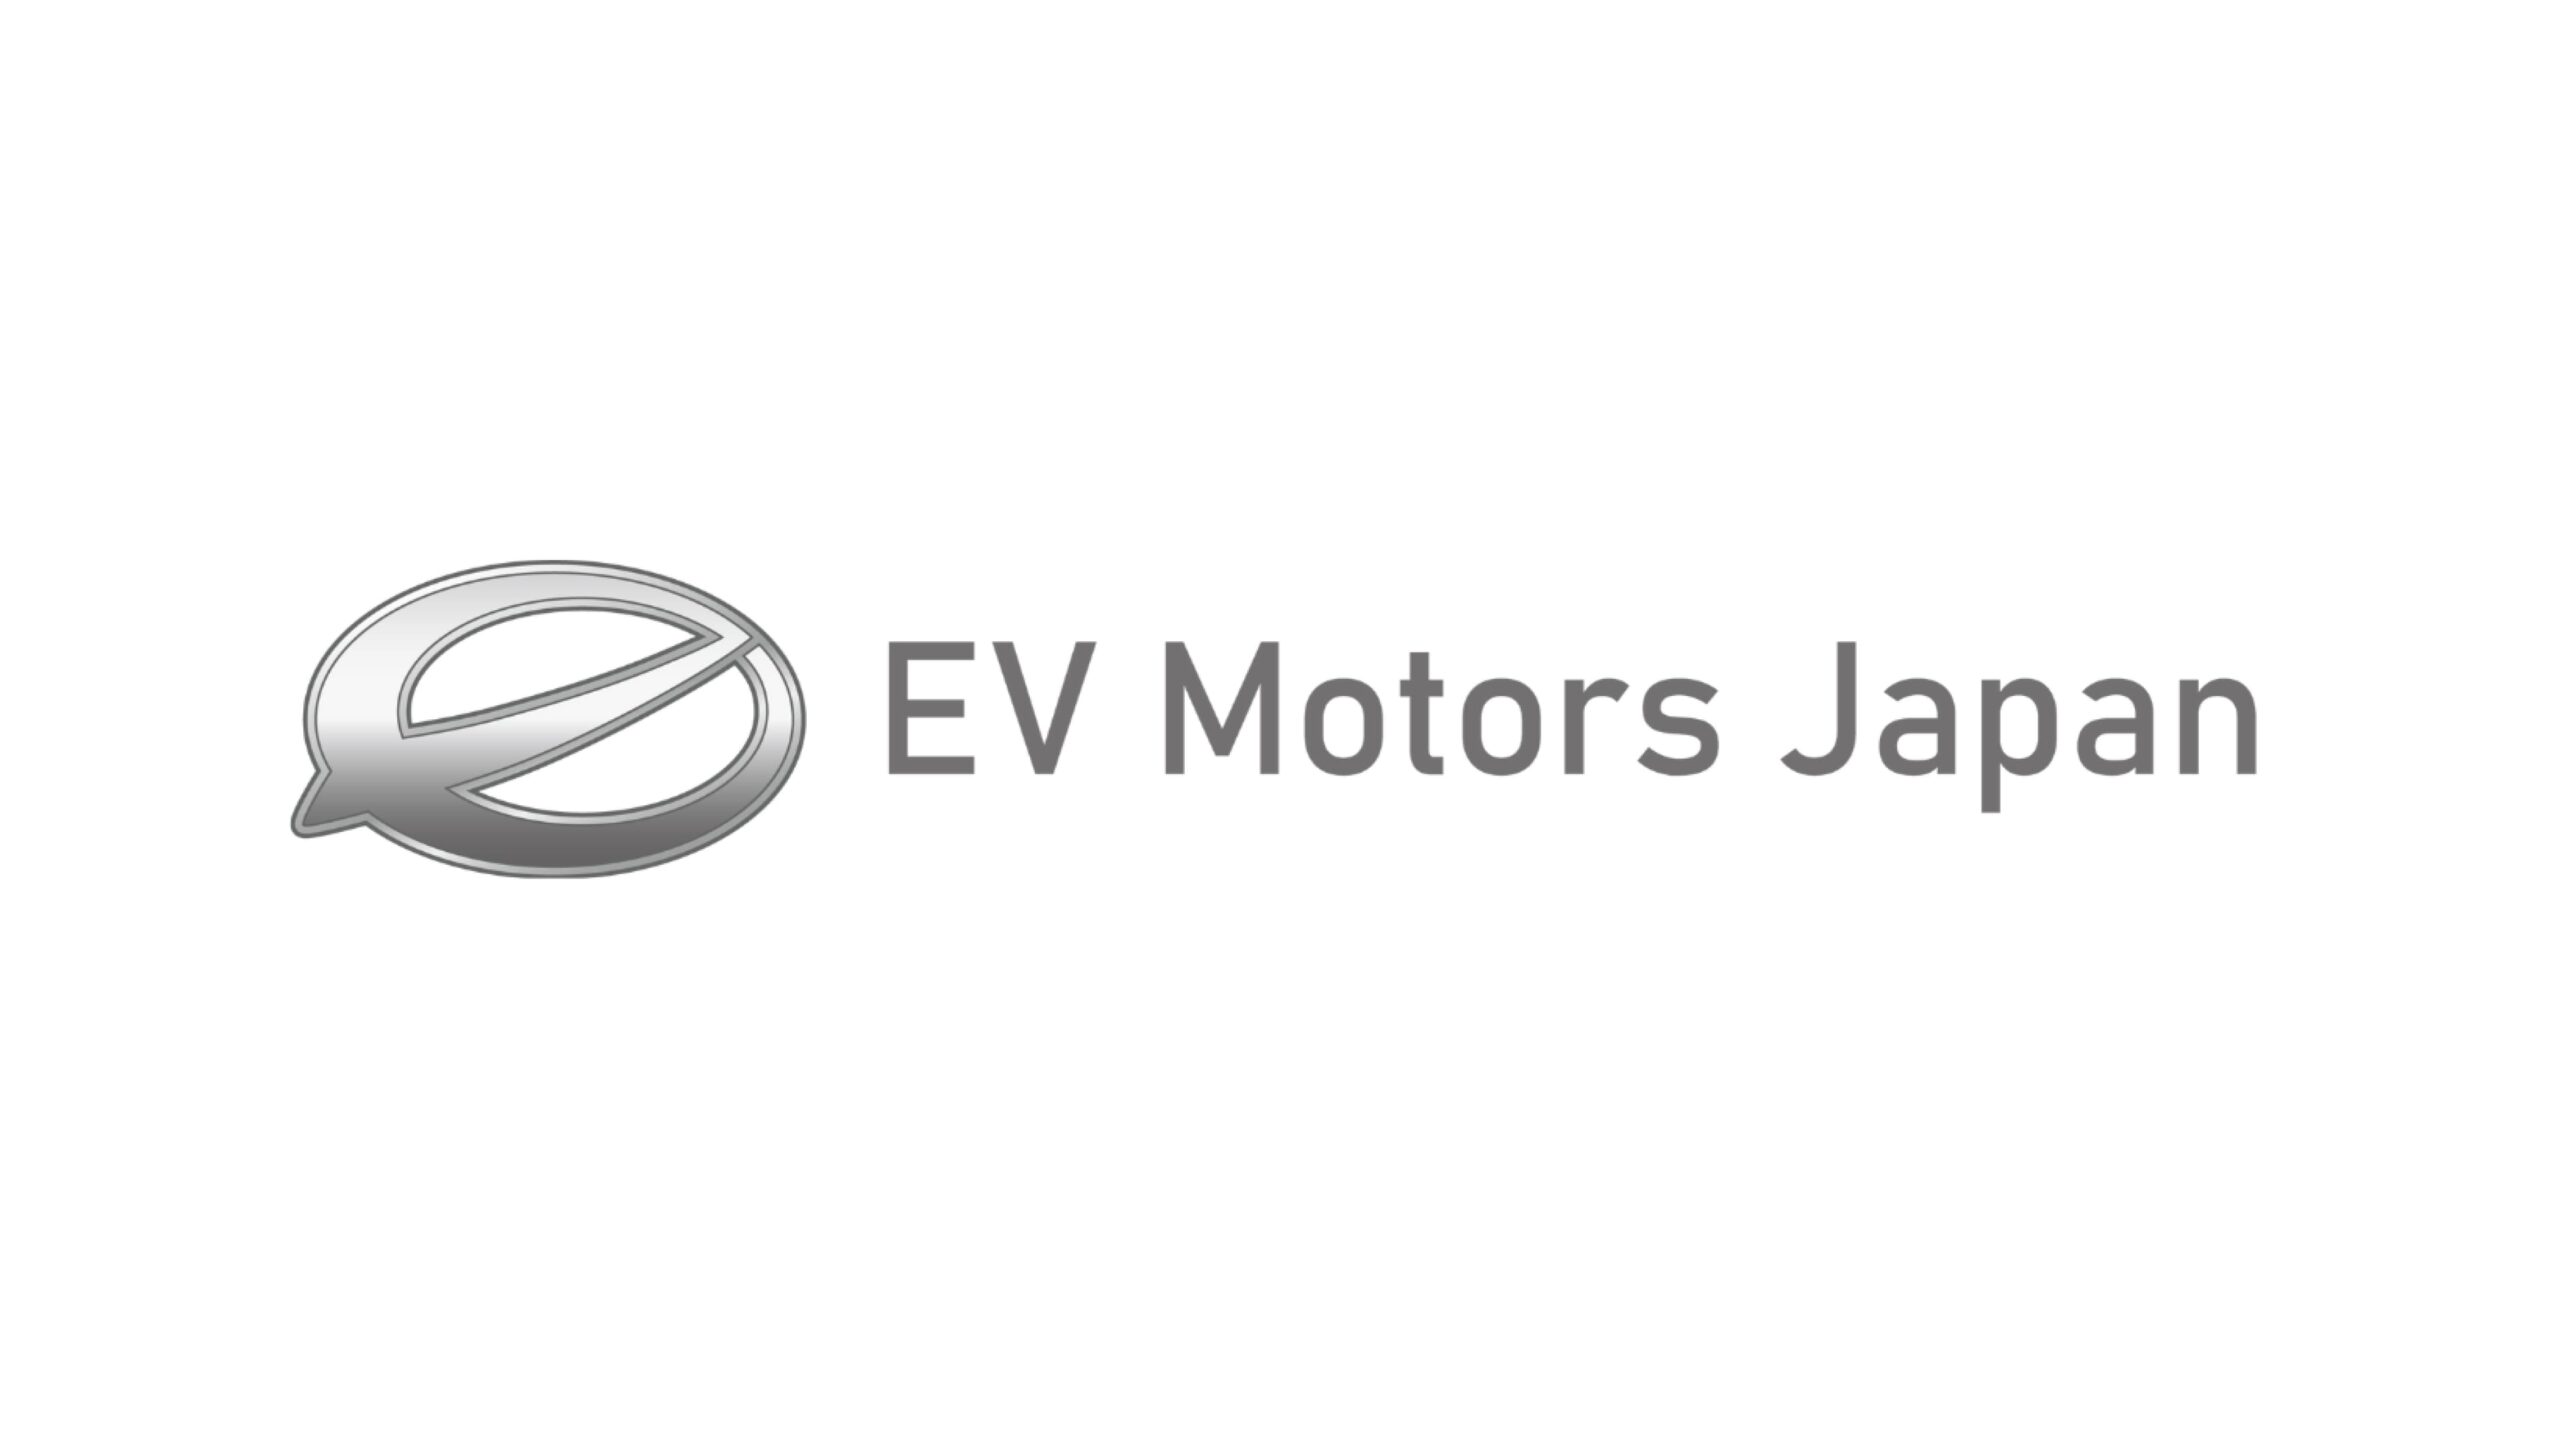 株式会社 EV モーターズ・ジャパン、第三者割当増資により16.4億円の資金調達を実施